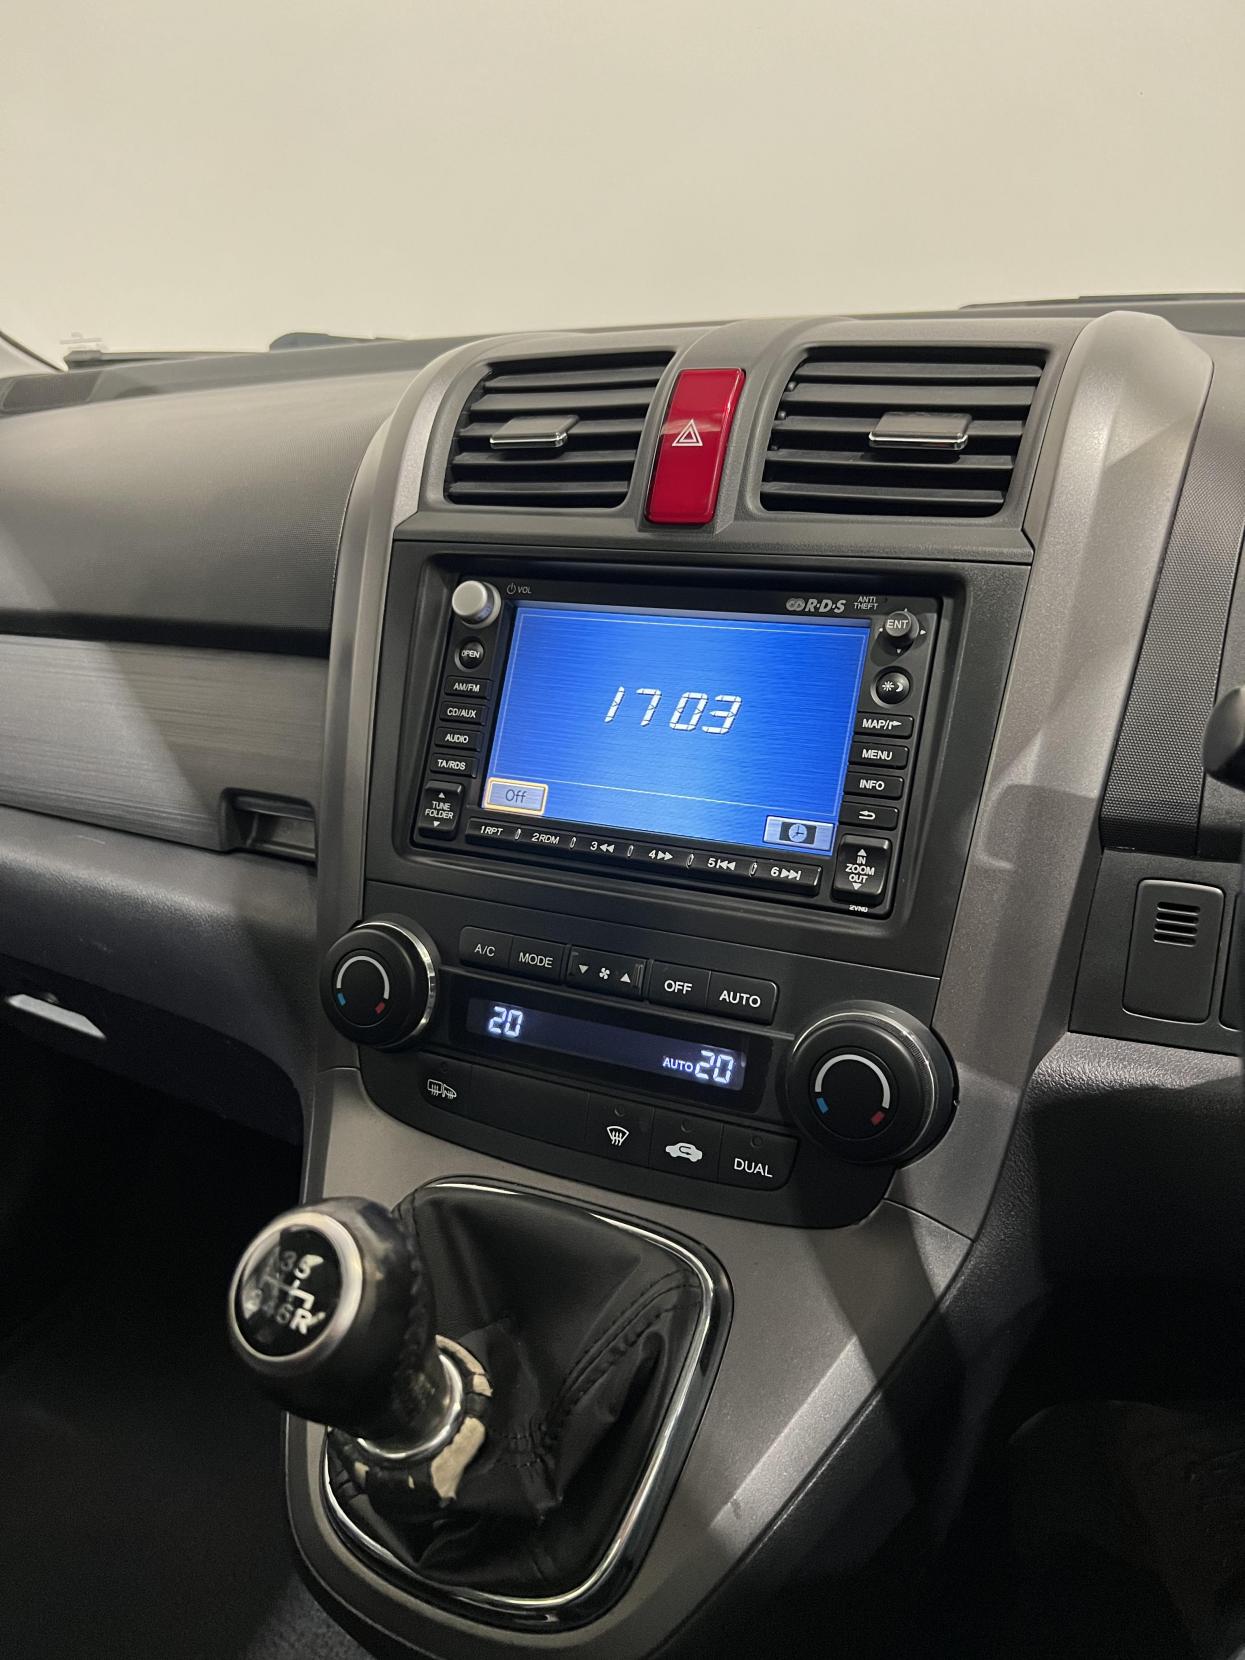 Honda CR-V 2.2 i-CDTi EX SUV 5dr Diesel Manual (173 g/km, 138 bhp)